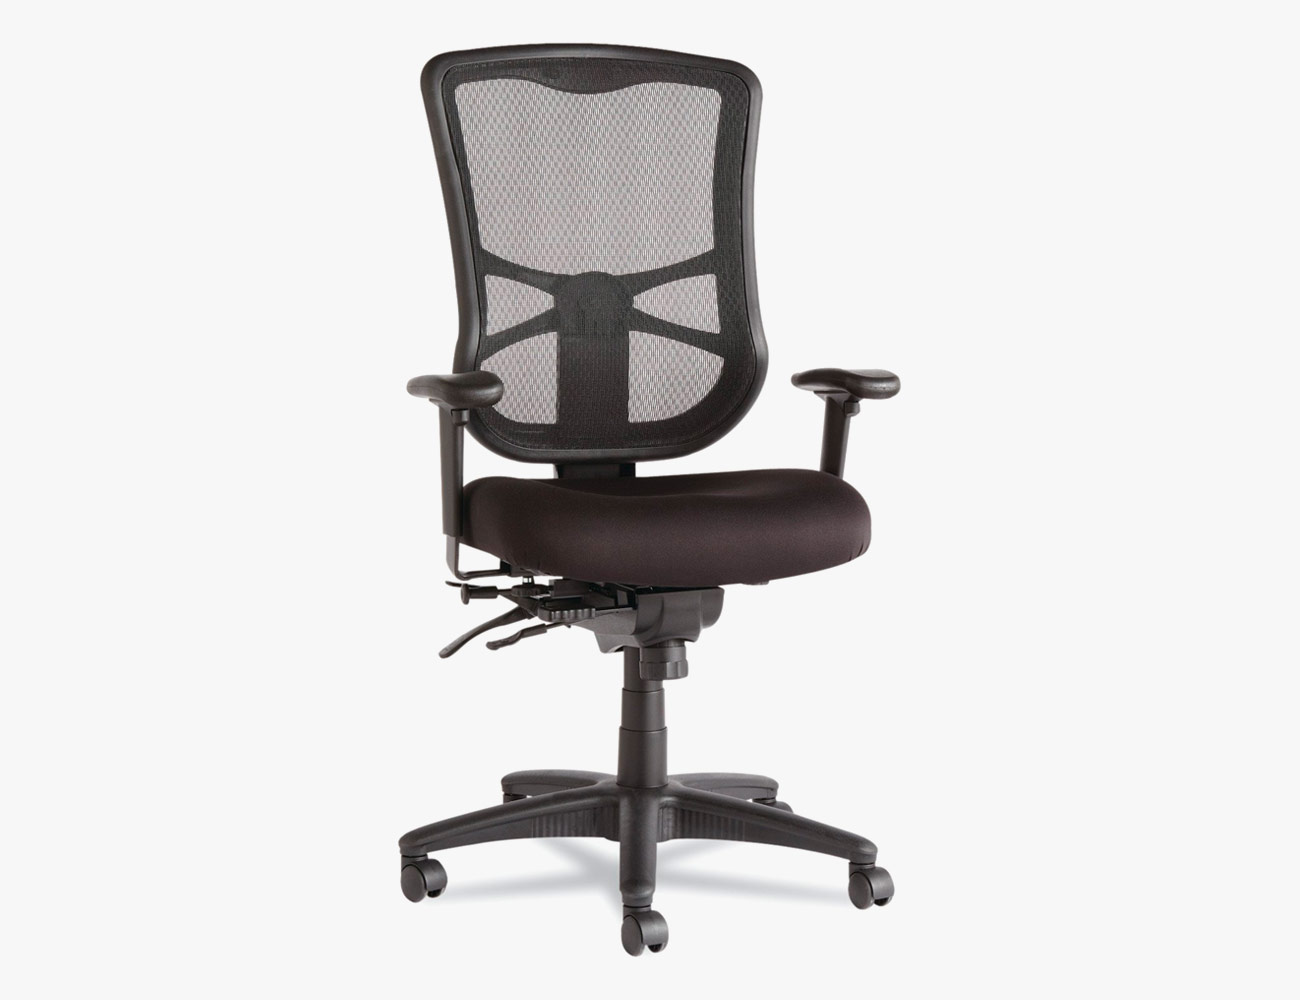 Best Office Chair Under $200: Alera Elusion Chair